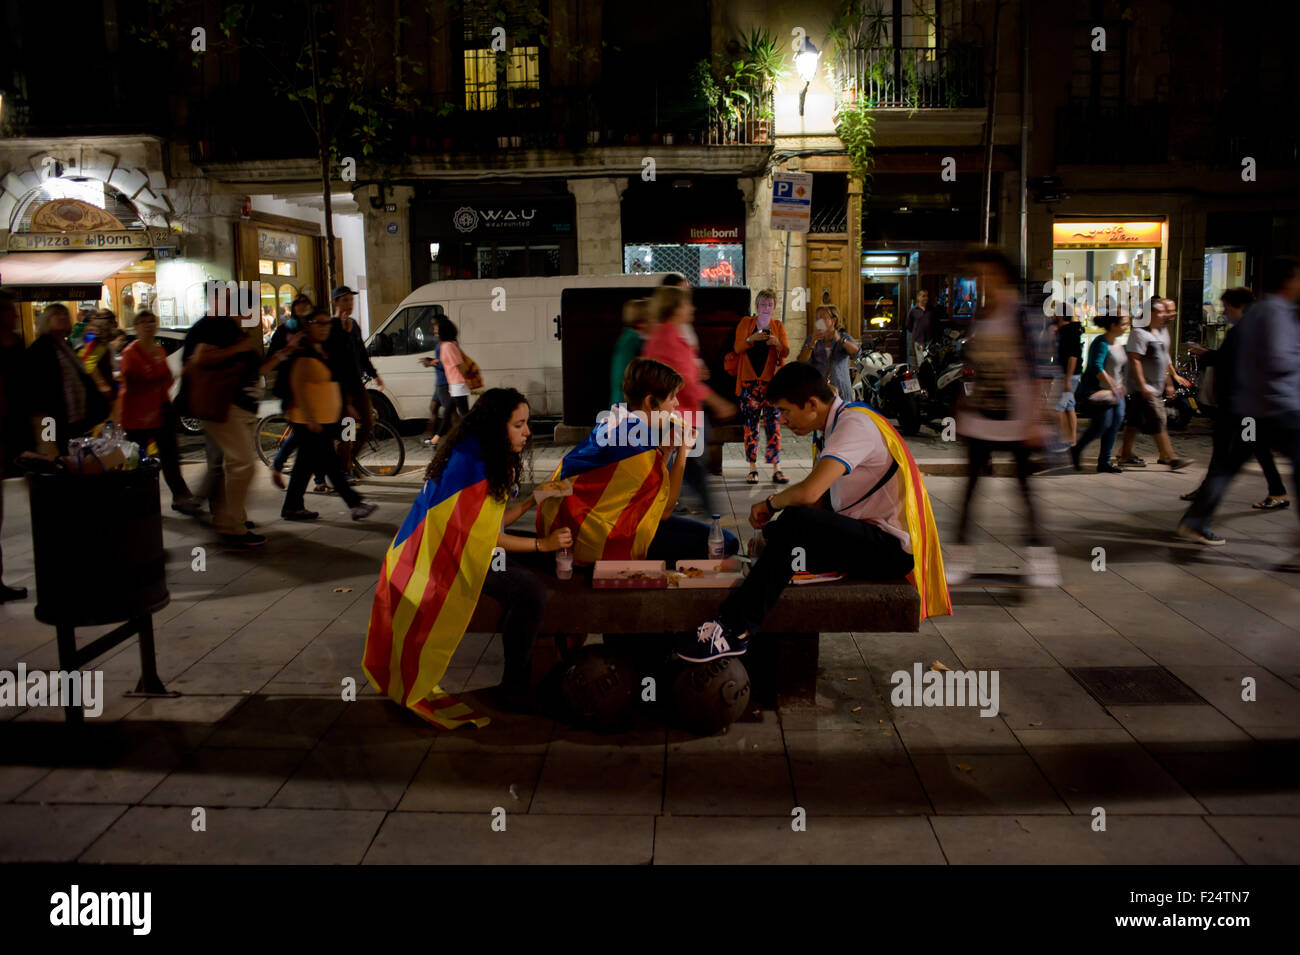 Un groupe de personnes portant un drapeau indépendantiste catalan (estelades) eating pizza dans les rues de Barcelone. Banque D'Images